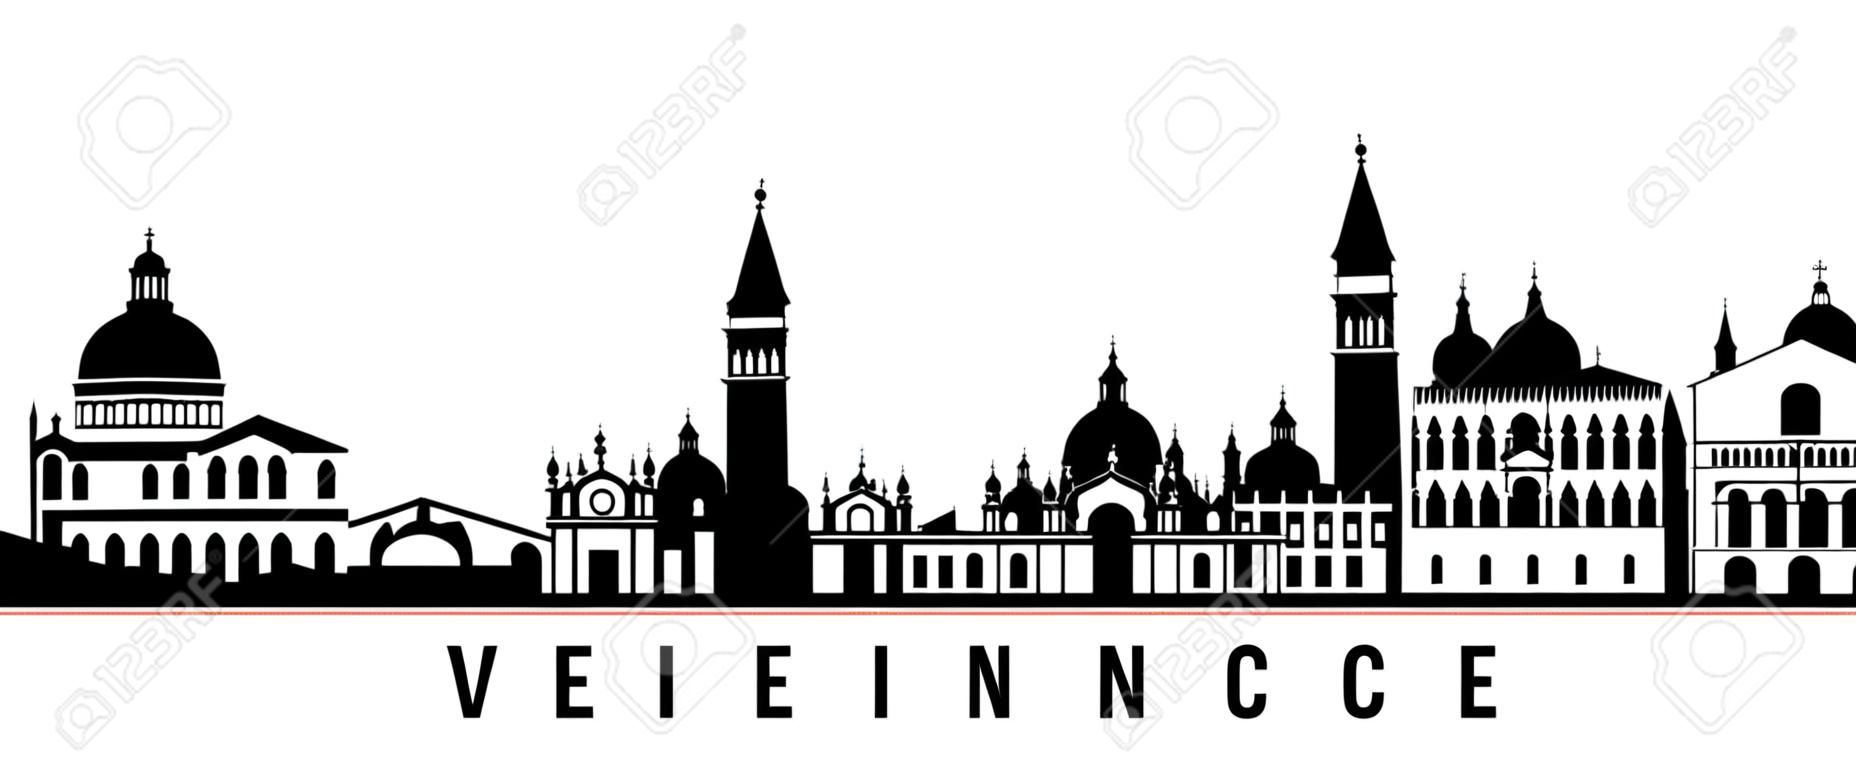 Bannière horizontale de Venise skyline. Silhouette noire et blanche de la ville de Venise, Italie. Modèle vectoriel pour votre conception.